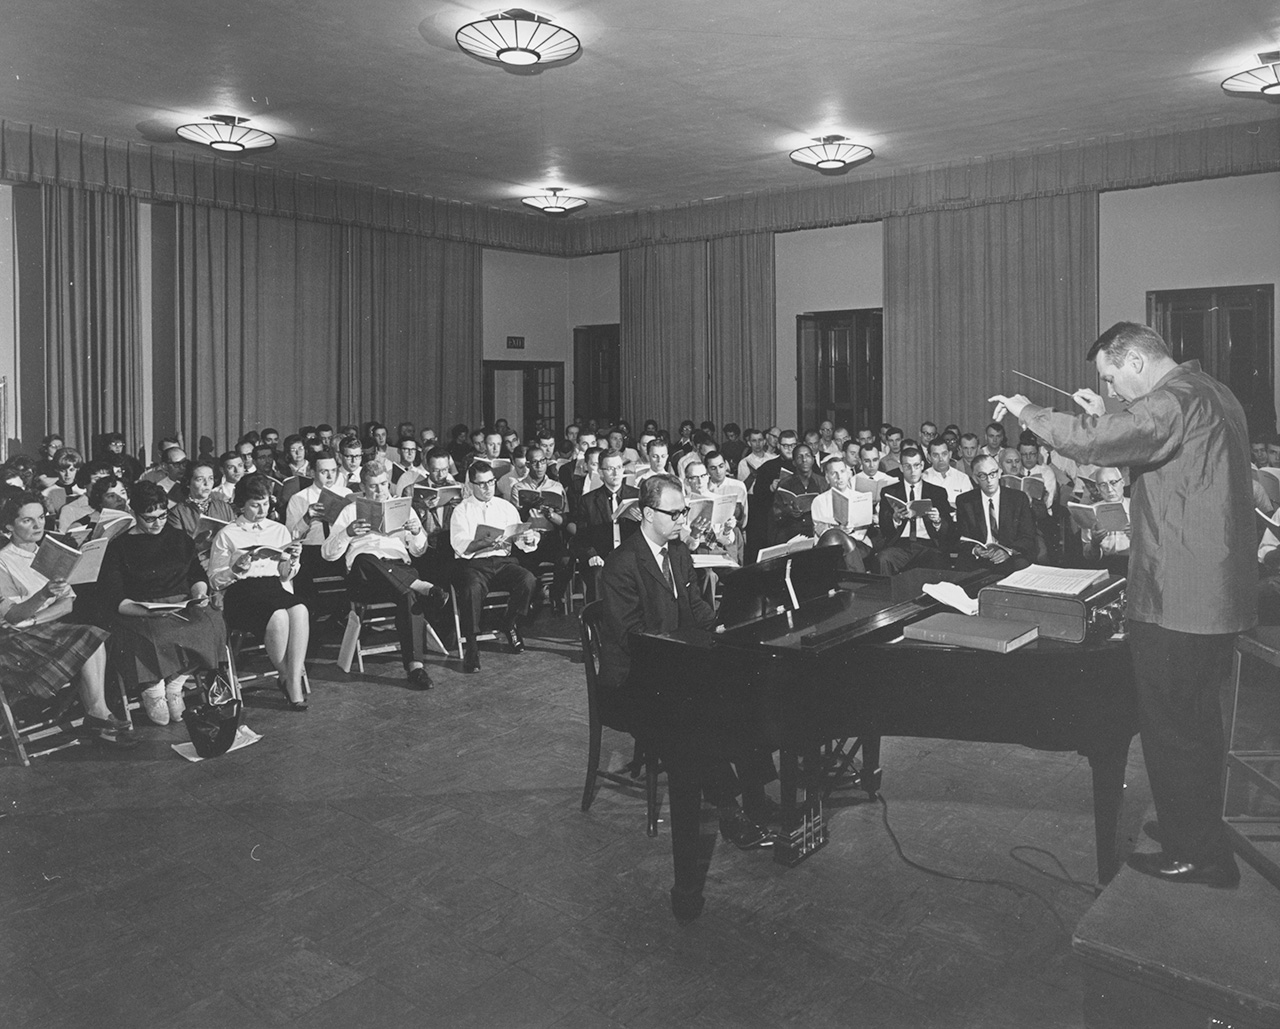 A man conducts a seated choir.